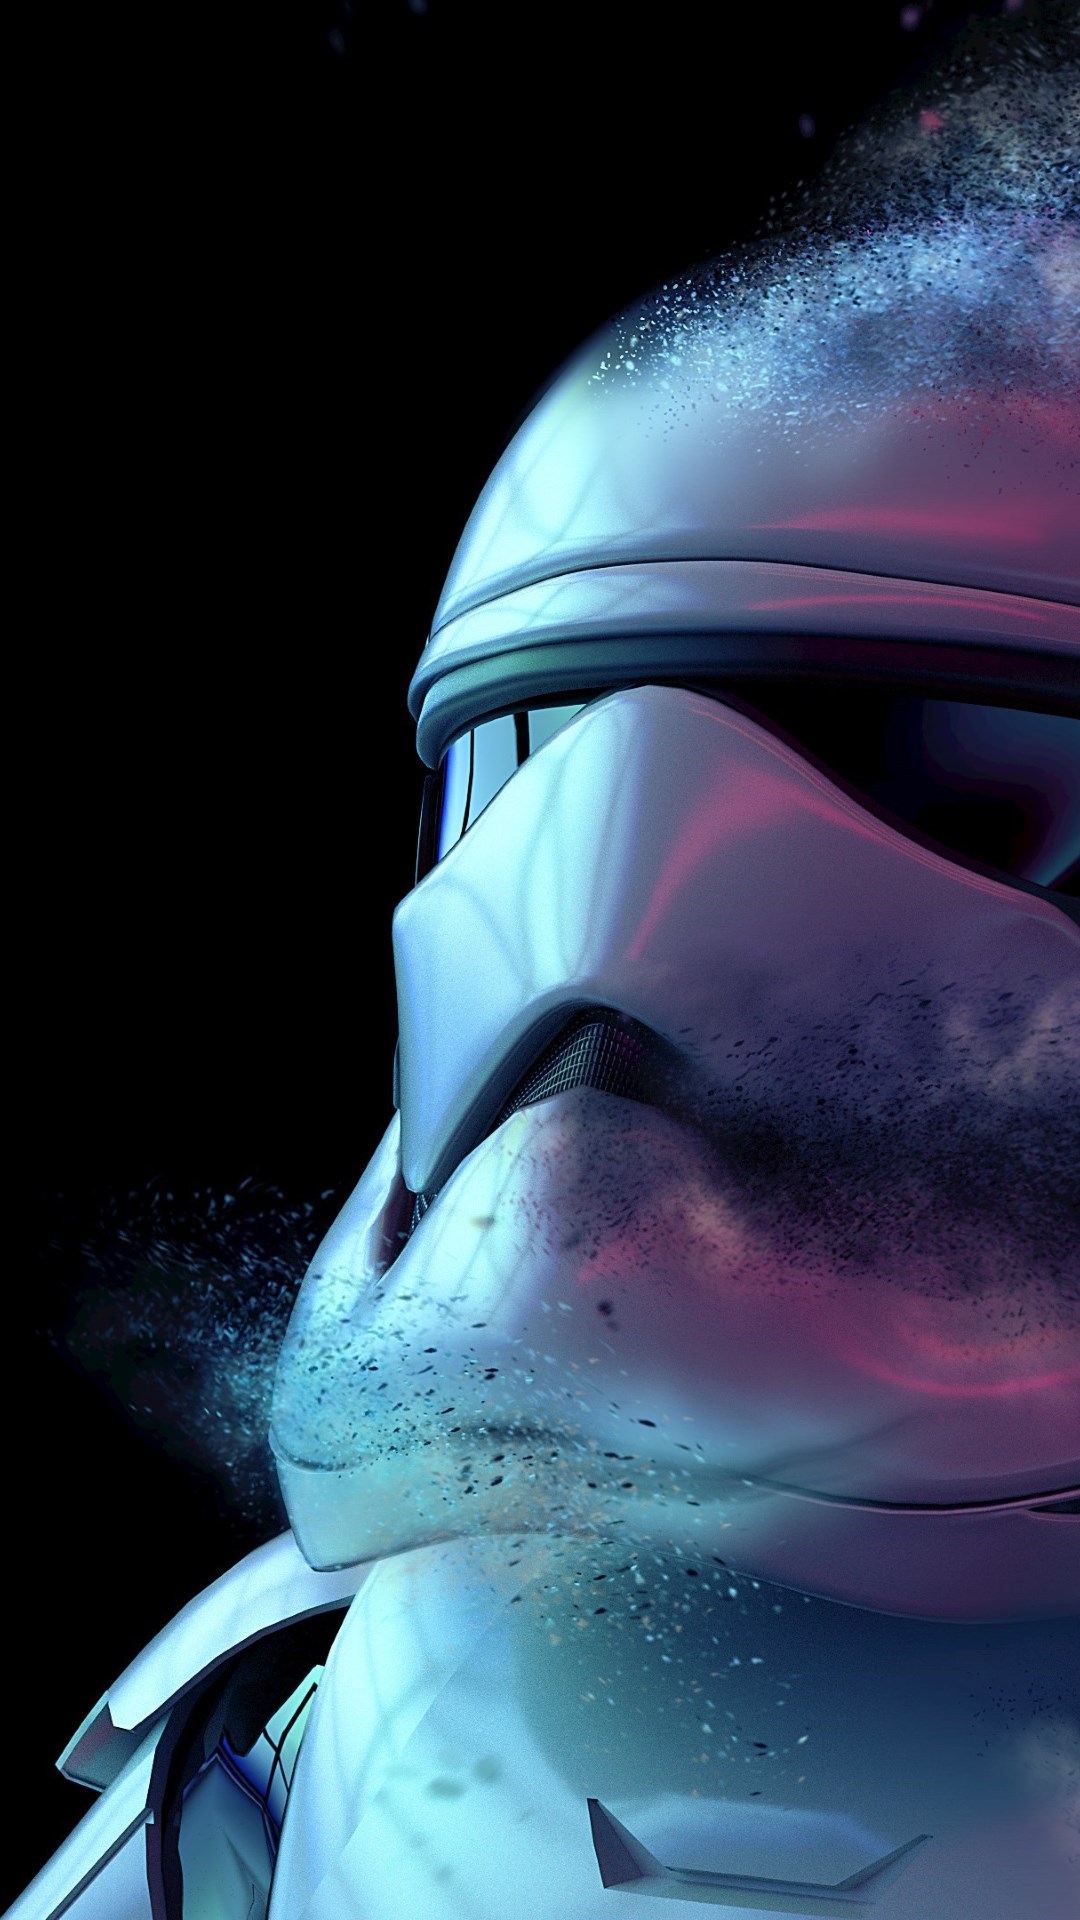 Storm Trooper from Star Wars wallpaper 1080x1920